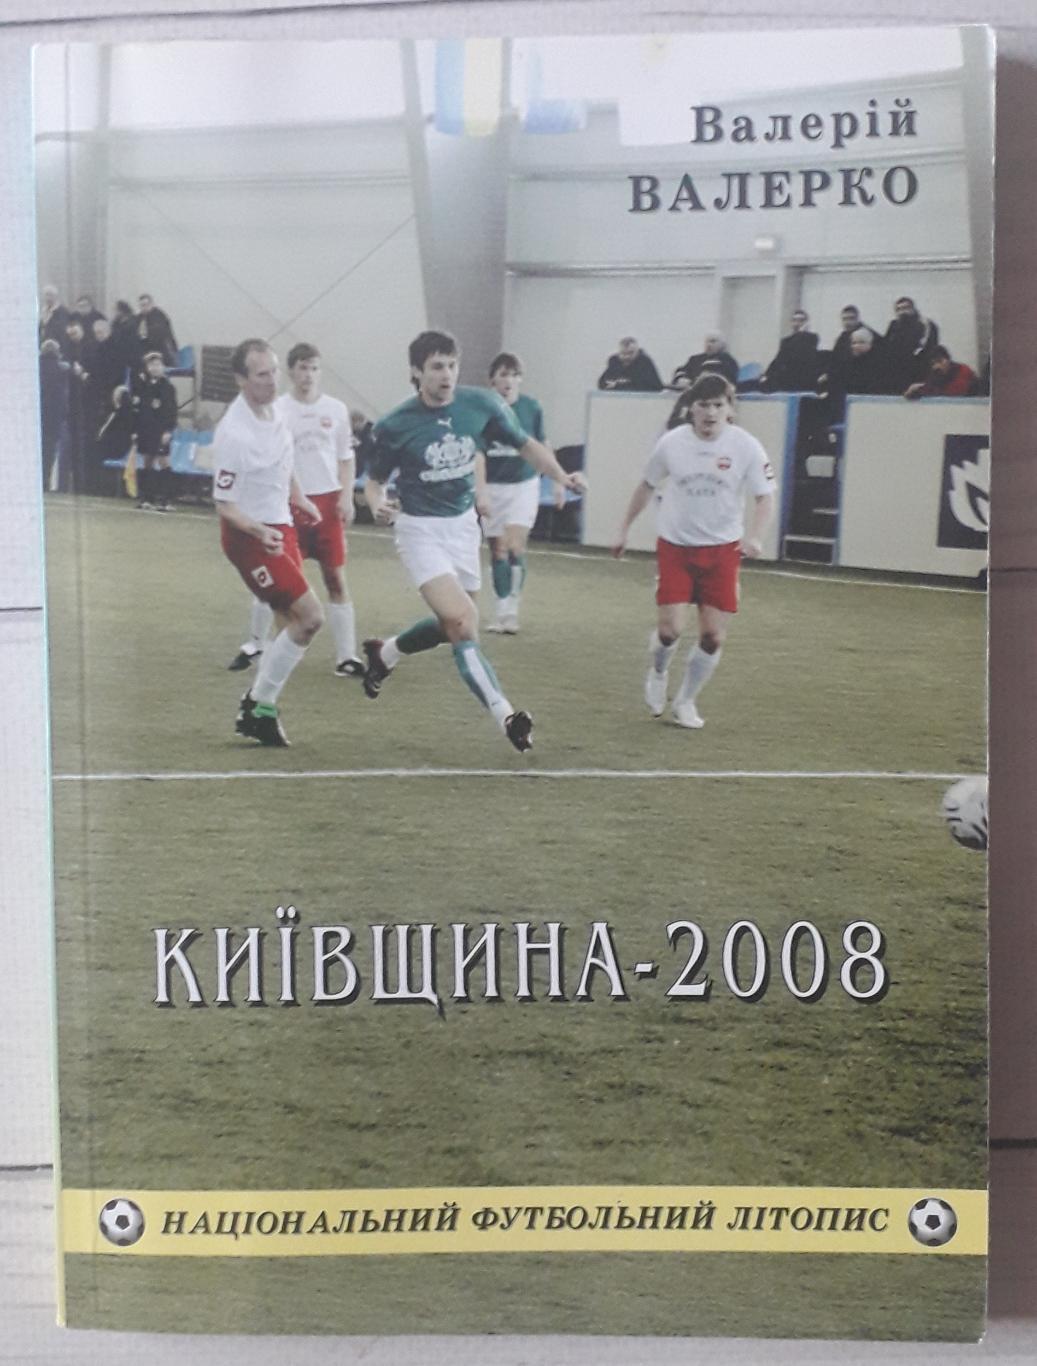 Валерко - Киевщина футбольная-2008